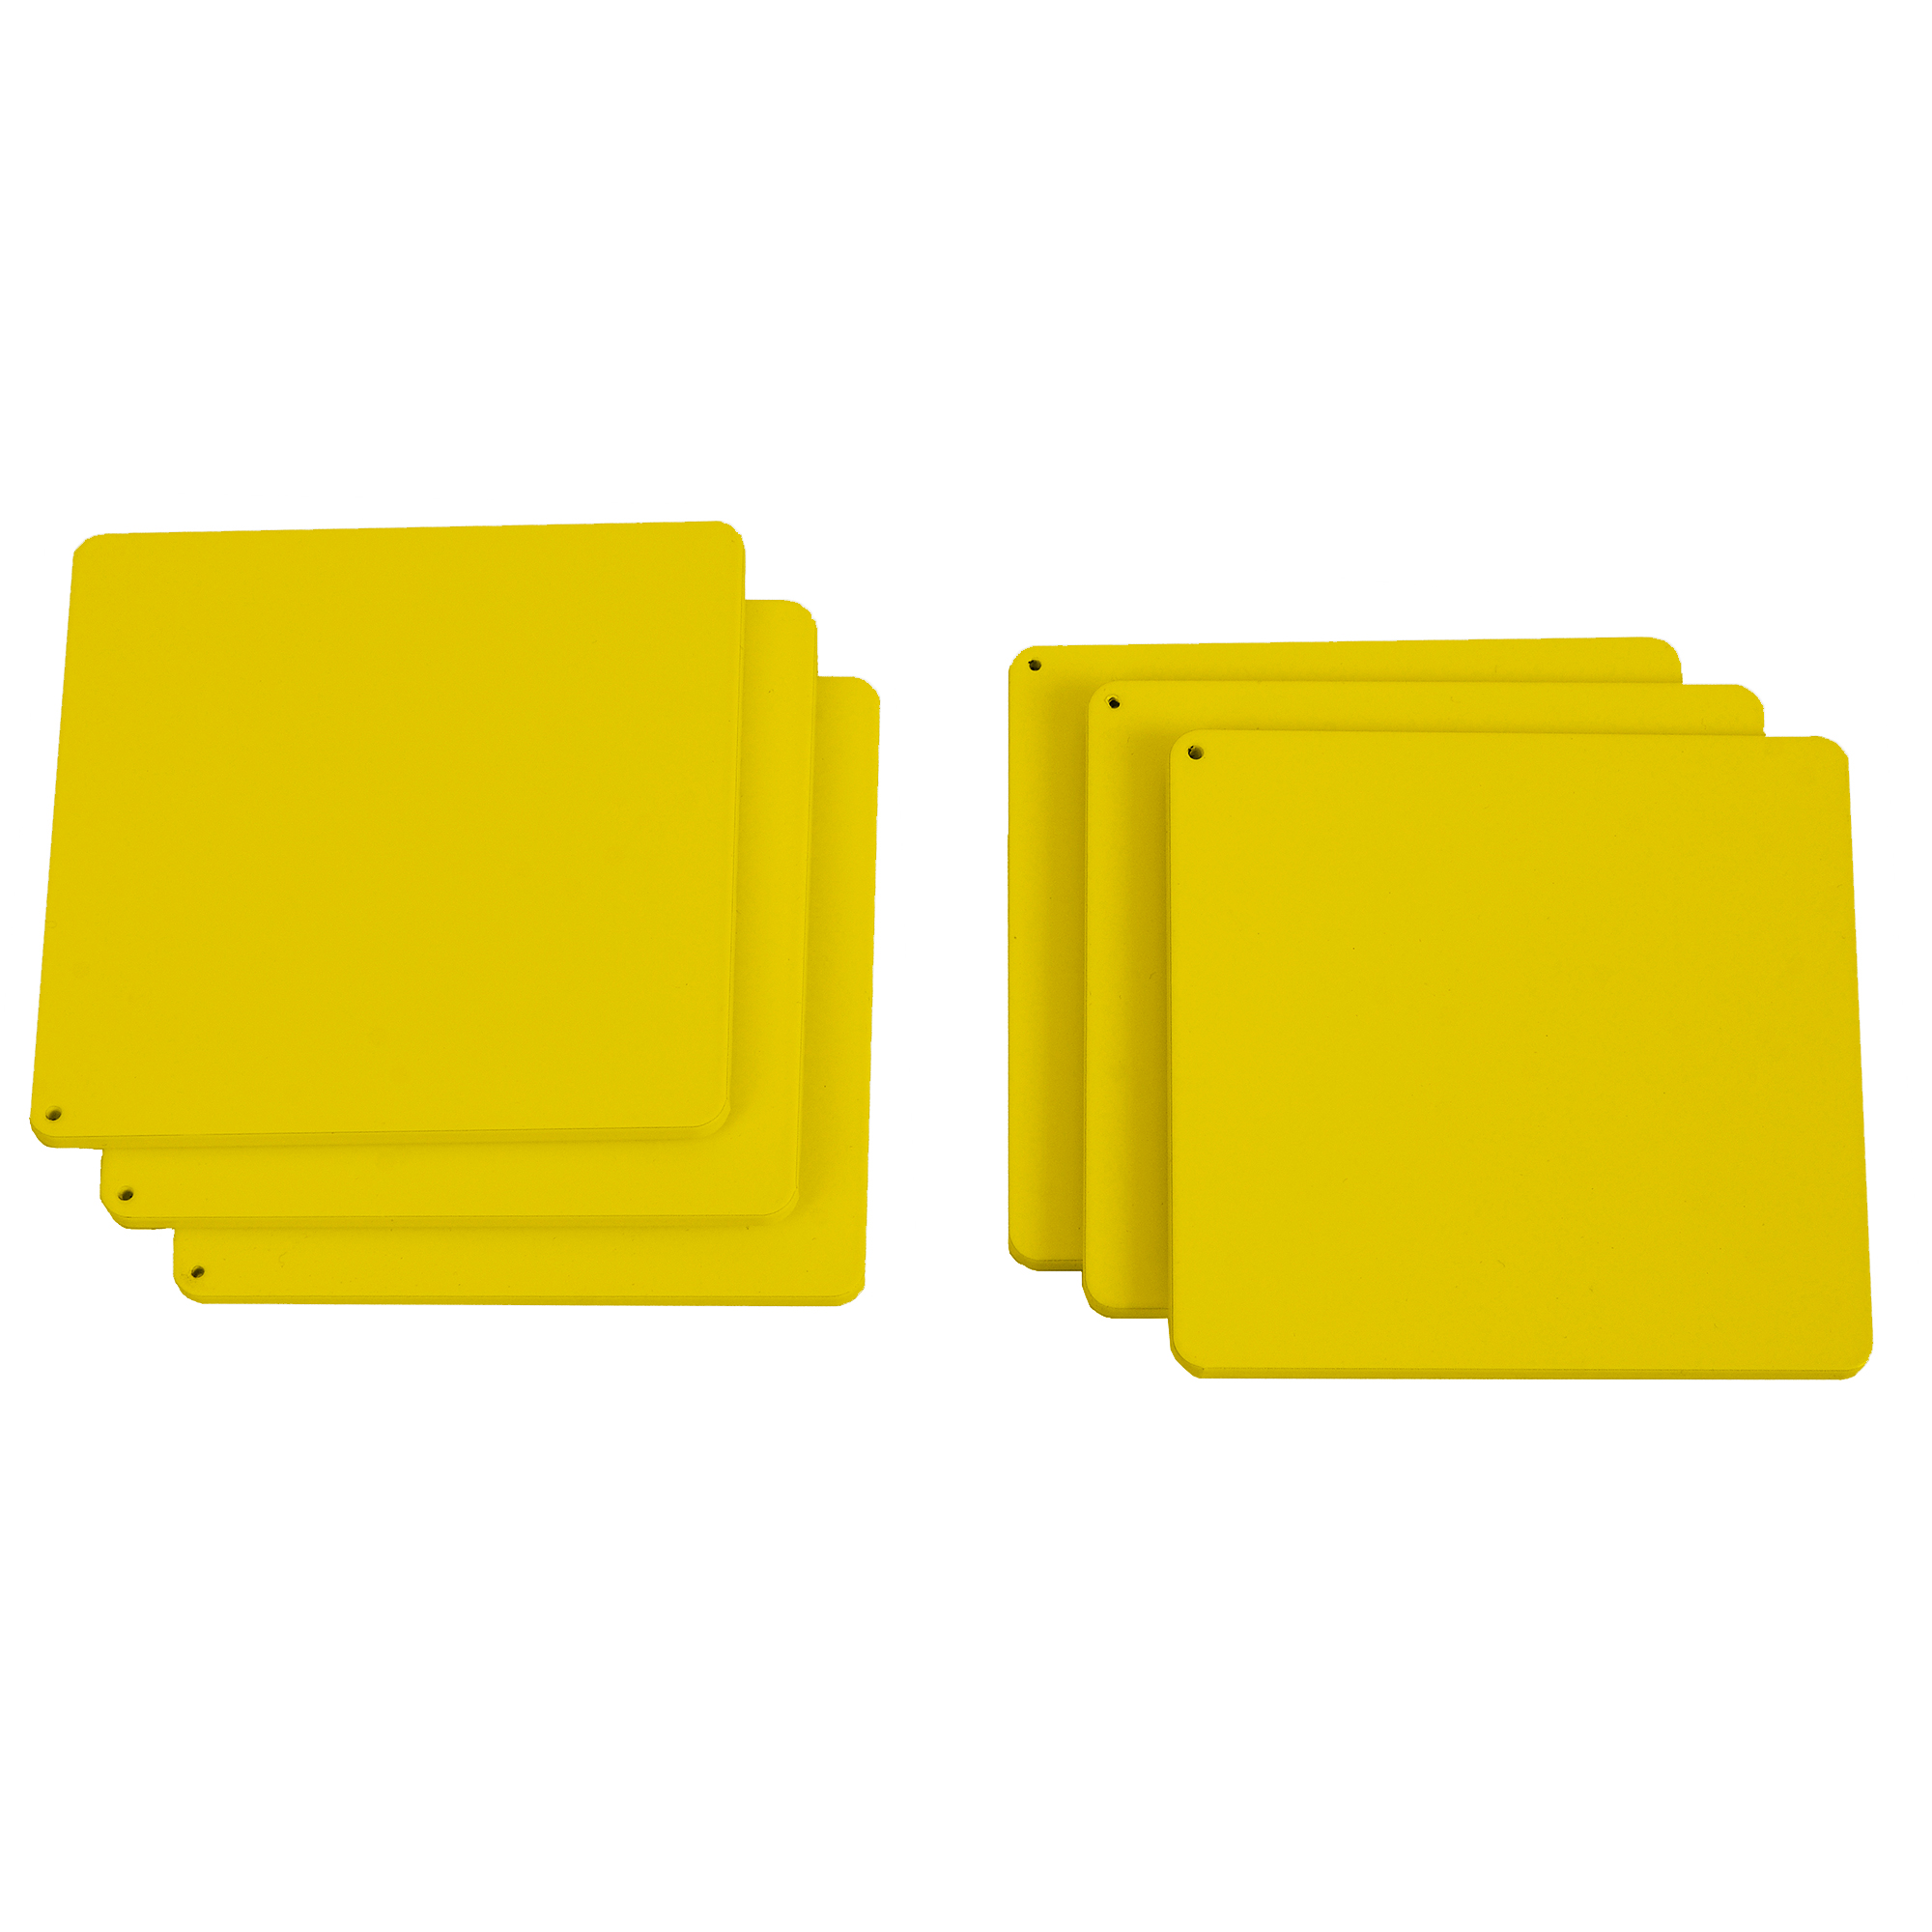 Σουβέρ Σετ 6τμχ Ανοξείδωτα Matt Yellow Pam & Co 10x10x0,3εκ. 10-10-603 (Υλικό: Ανοξείδωτο, Χρώμα: Κίτρινο ) – Pam & Co – 10-10-603